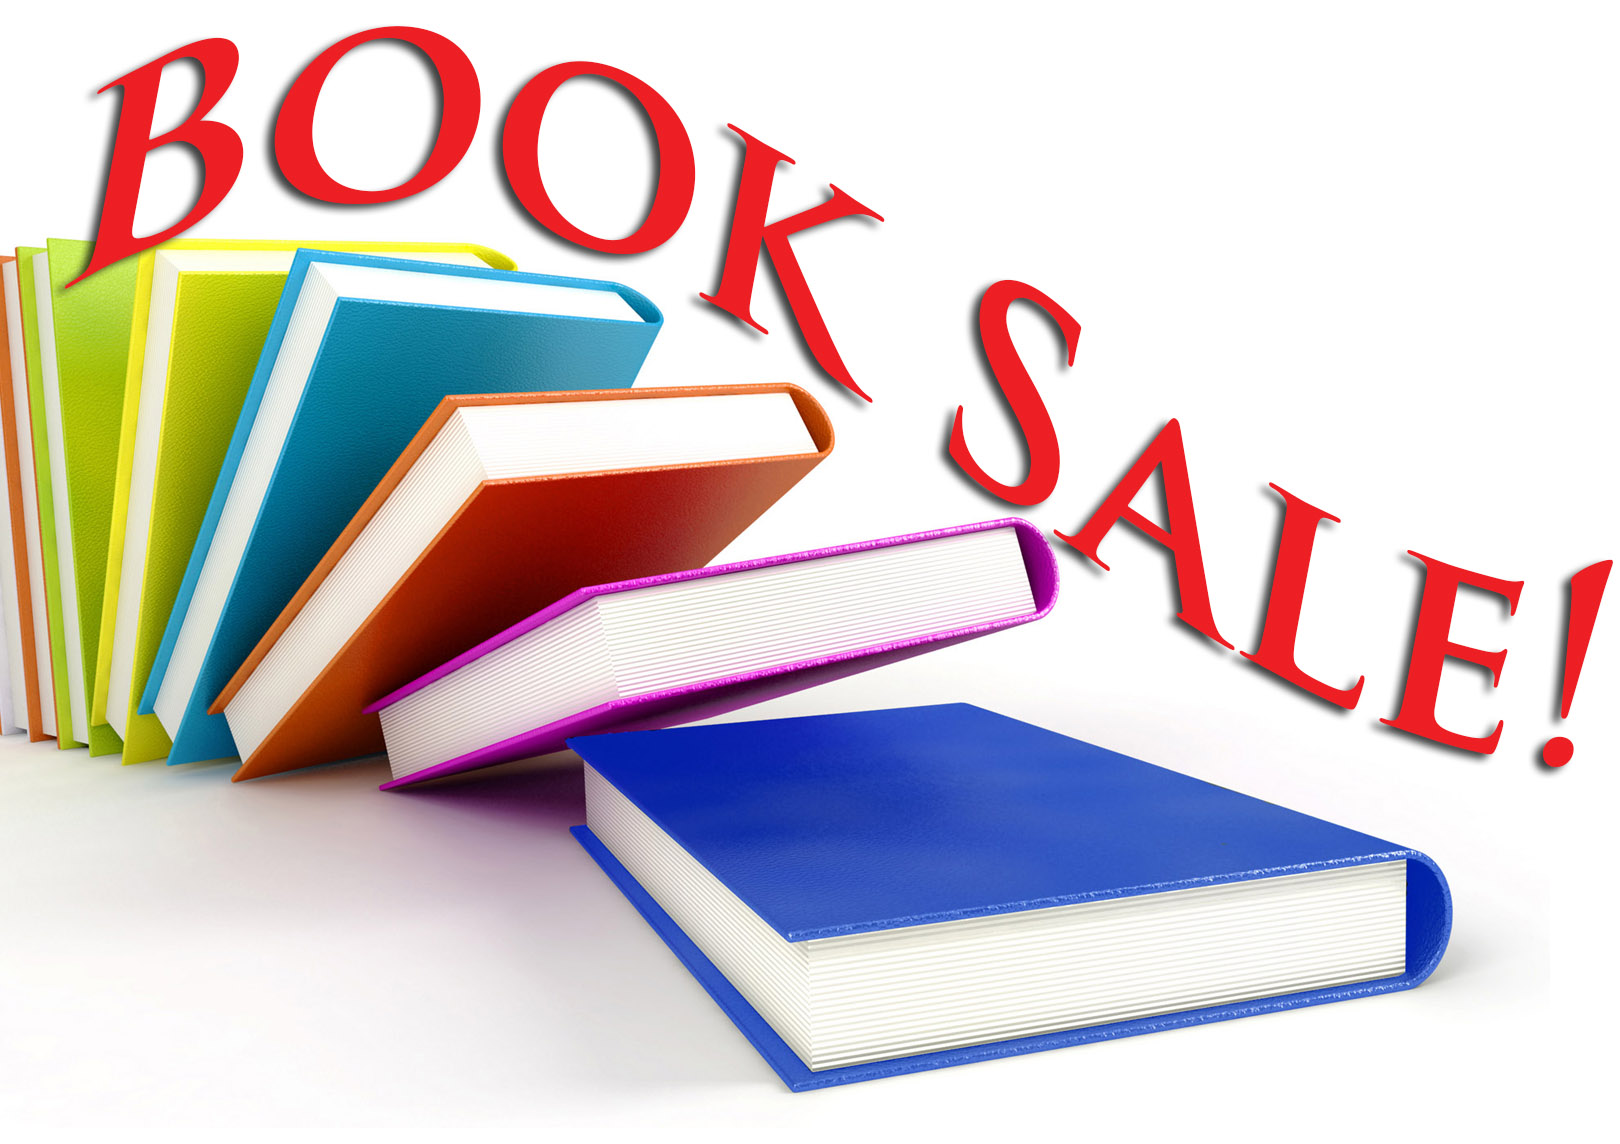 Book Sale books